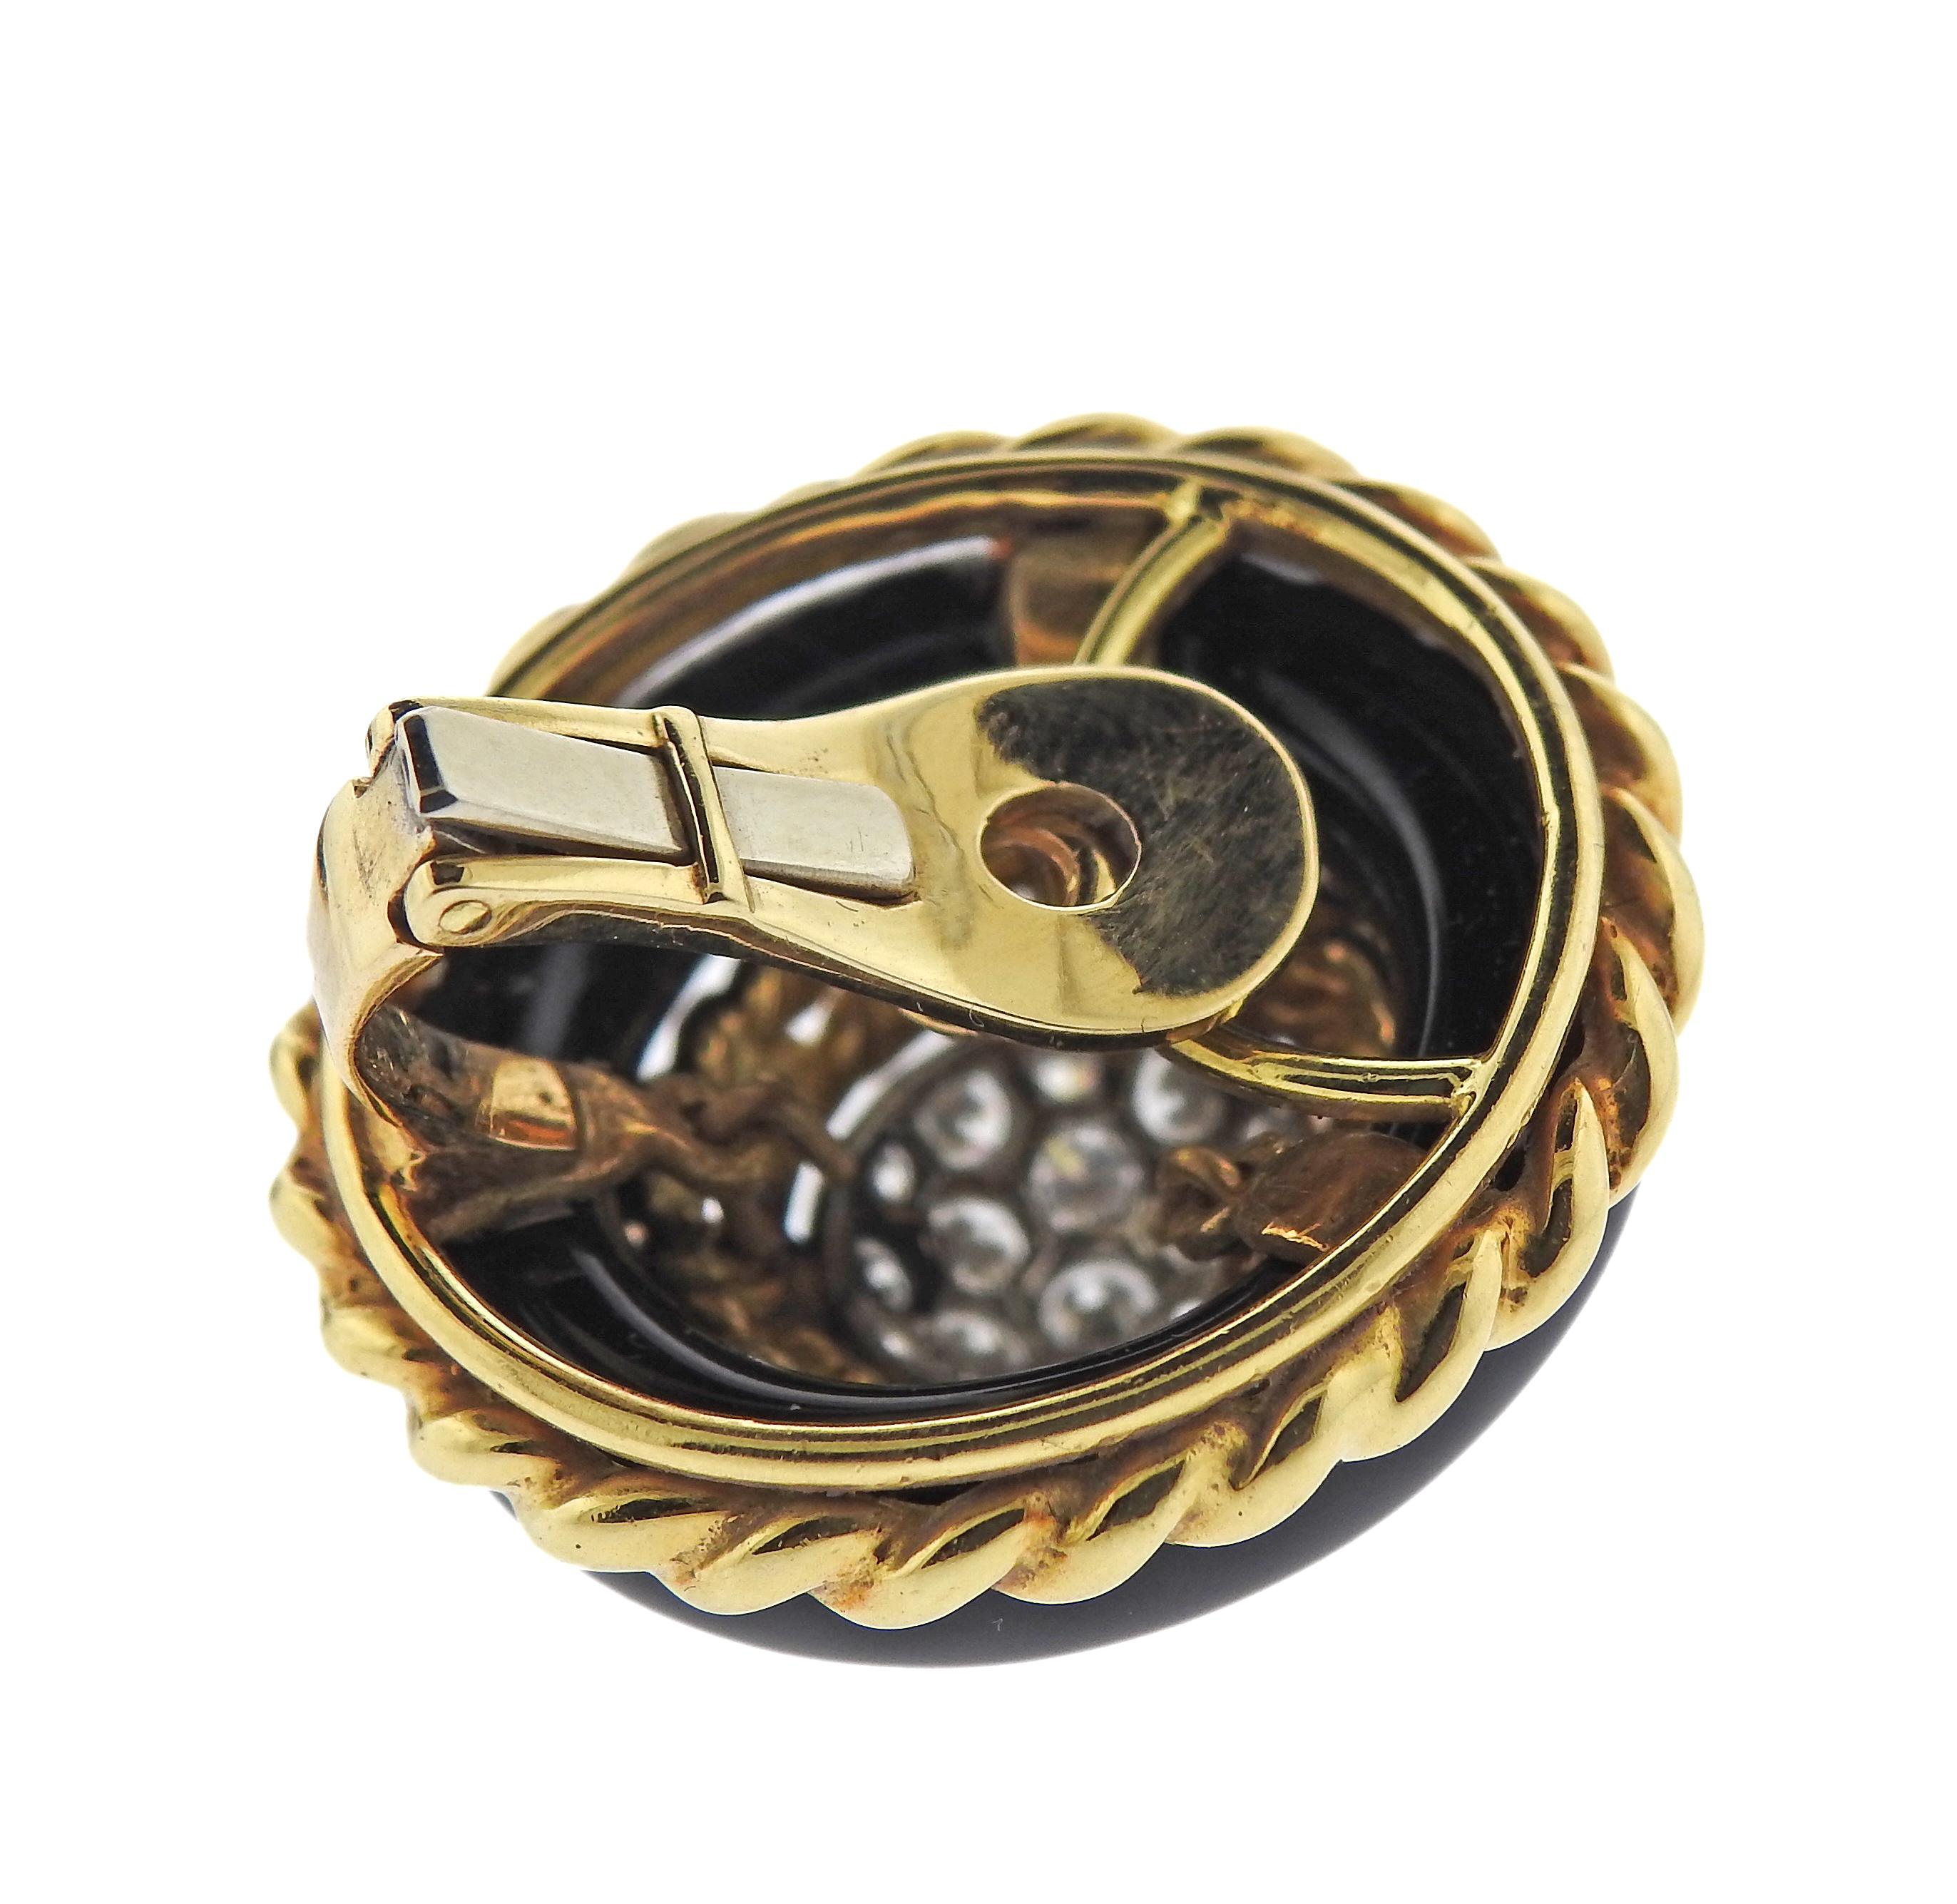 Paar Vintage-Ohrringe aus 18 Karat Gold von Van Cleef & Arpels, mit Onyx und ca. 1,20 ct. in Diamanten. Die Ohrringe messen 1